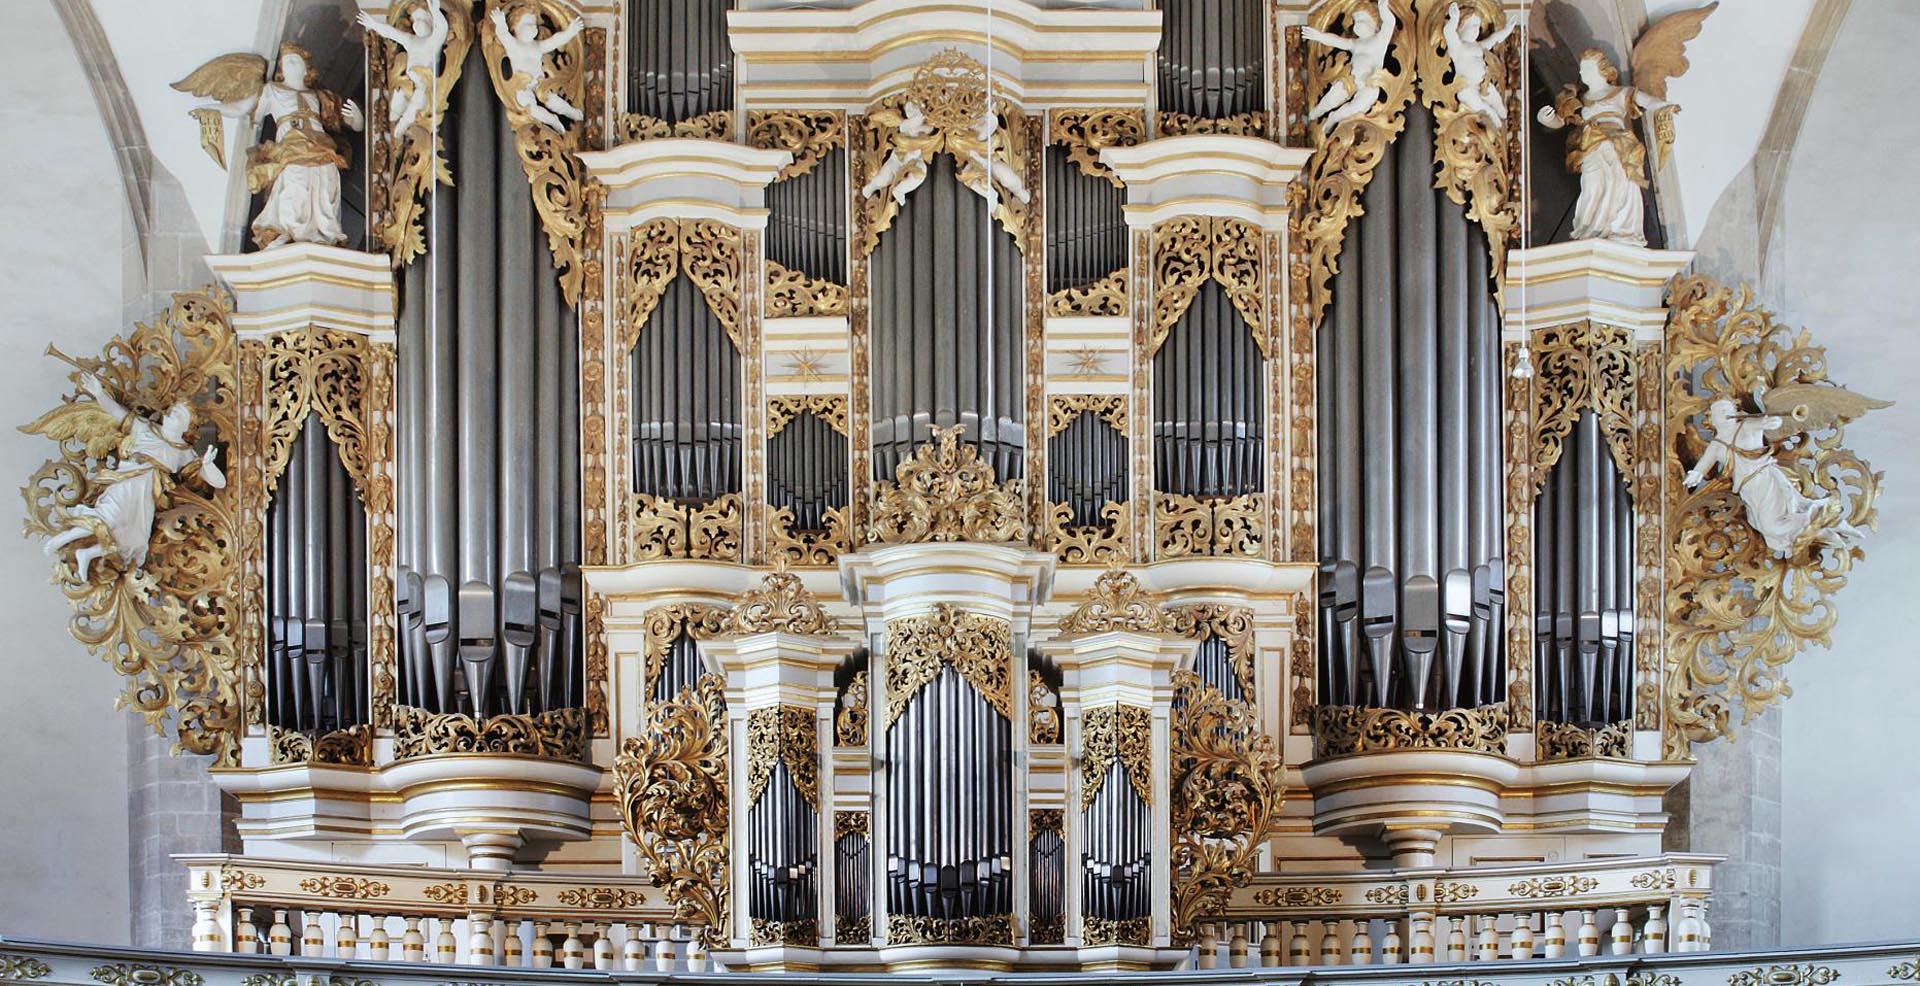 Ladegast organ in Merseburg Cathedral